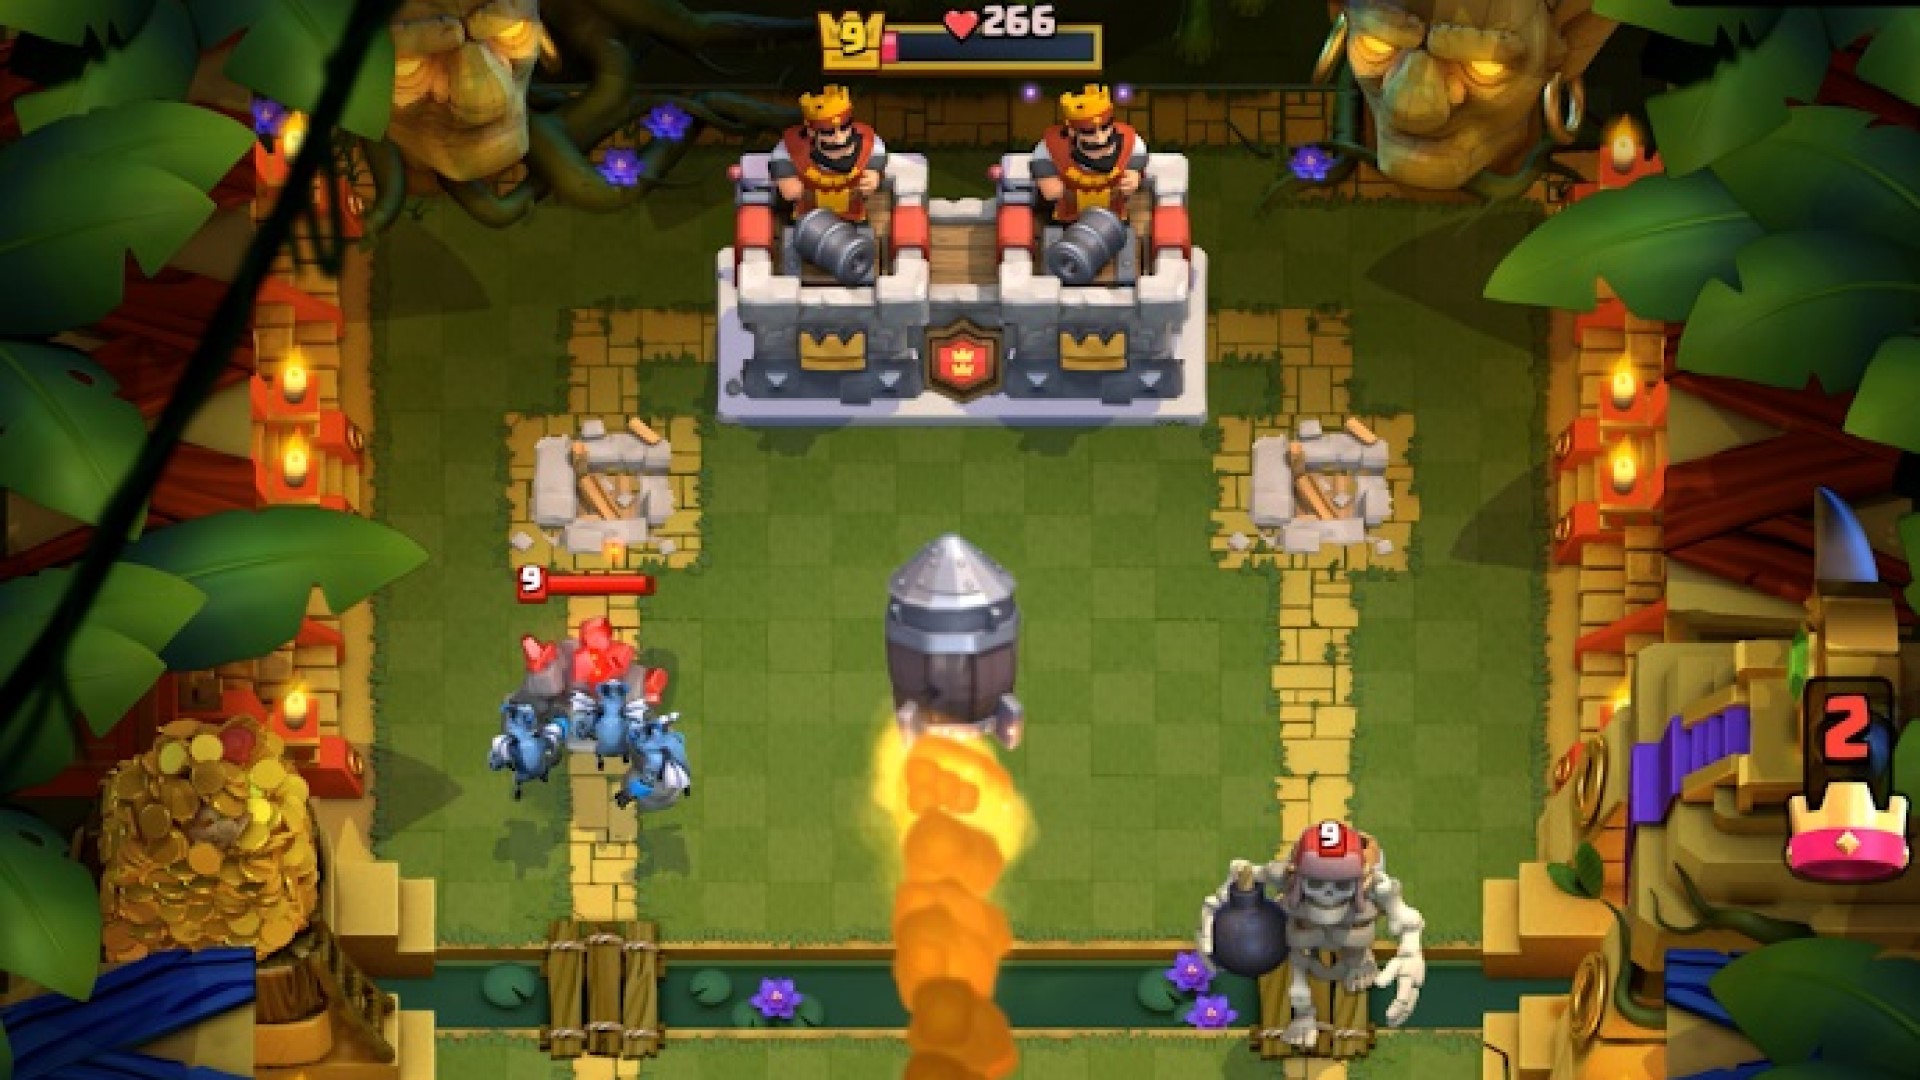 Beste mobiele strategiespellen: Clash Royale. Afbeelding toont twee koningen die kanonnen richten op een gigantisch skelet in een jungle-achtige omgeving